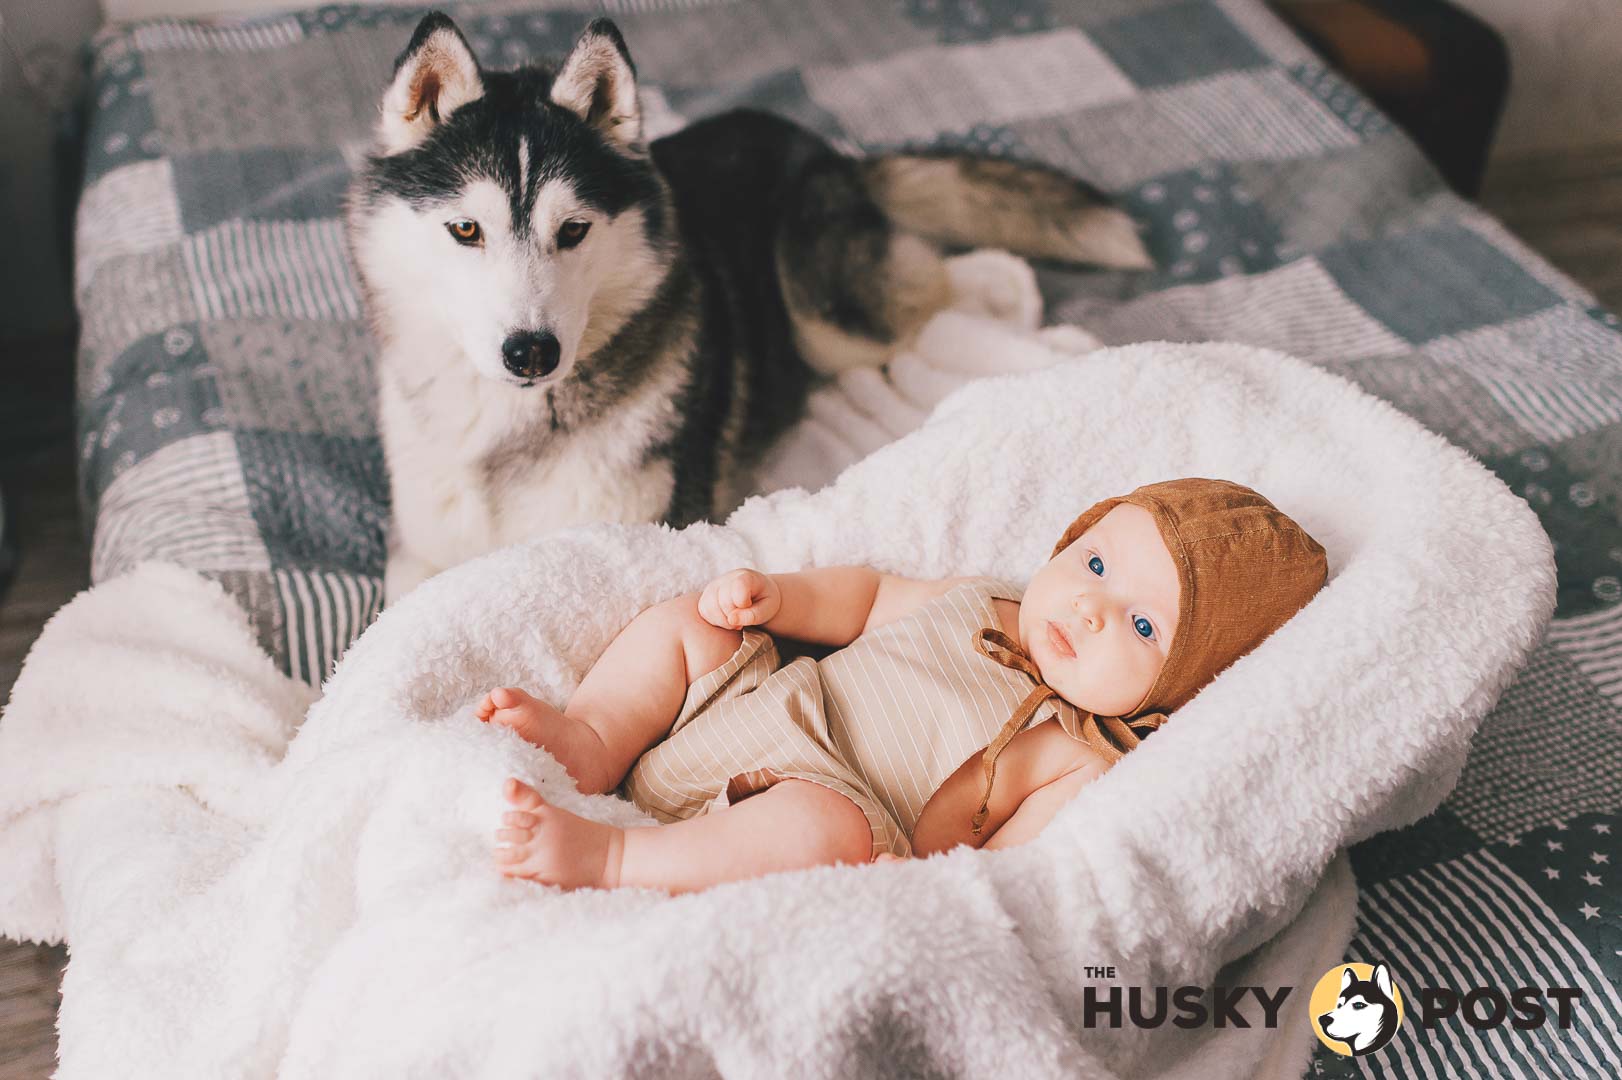 Husky and baby